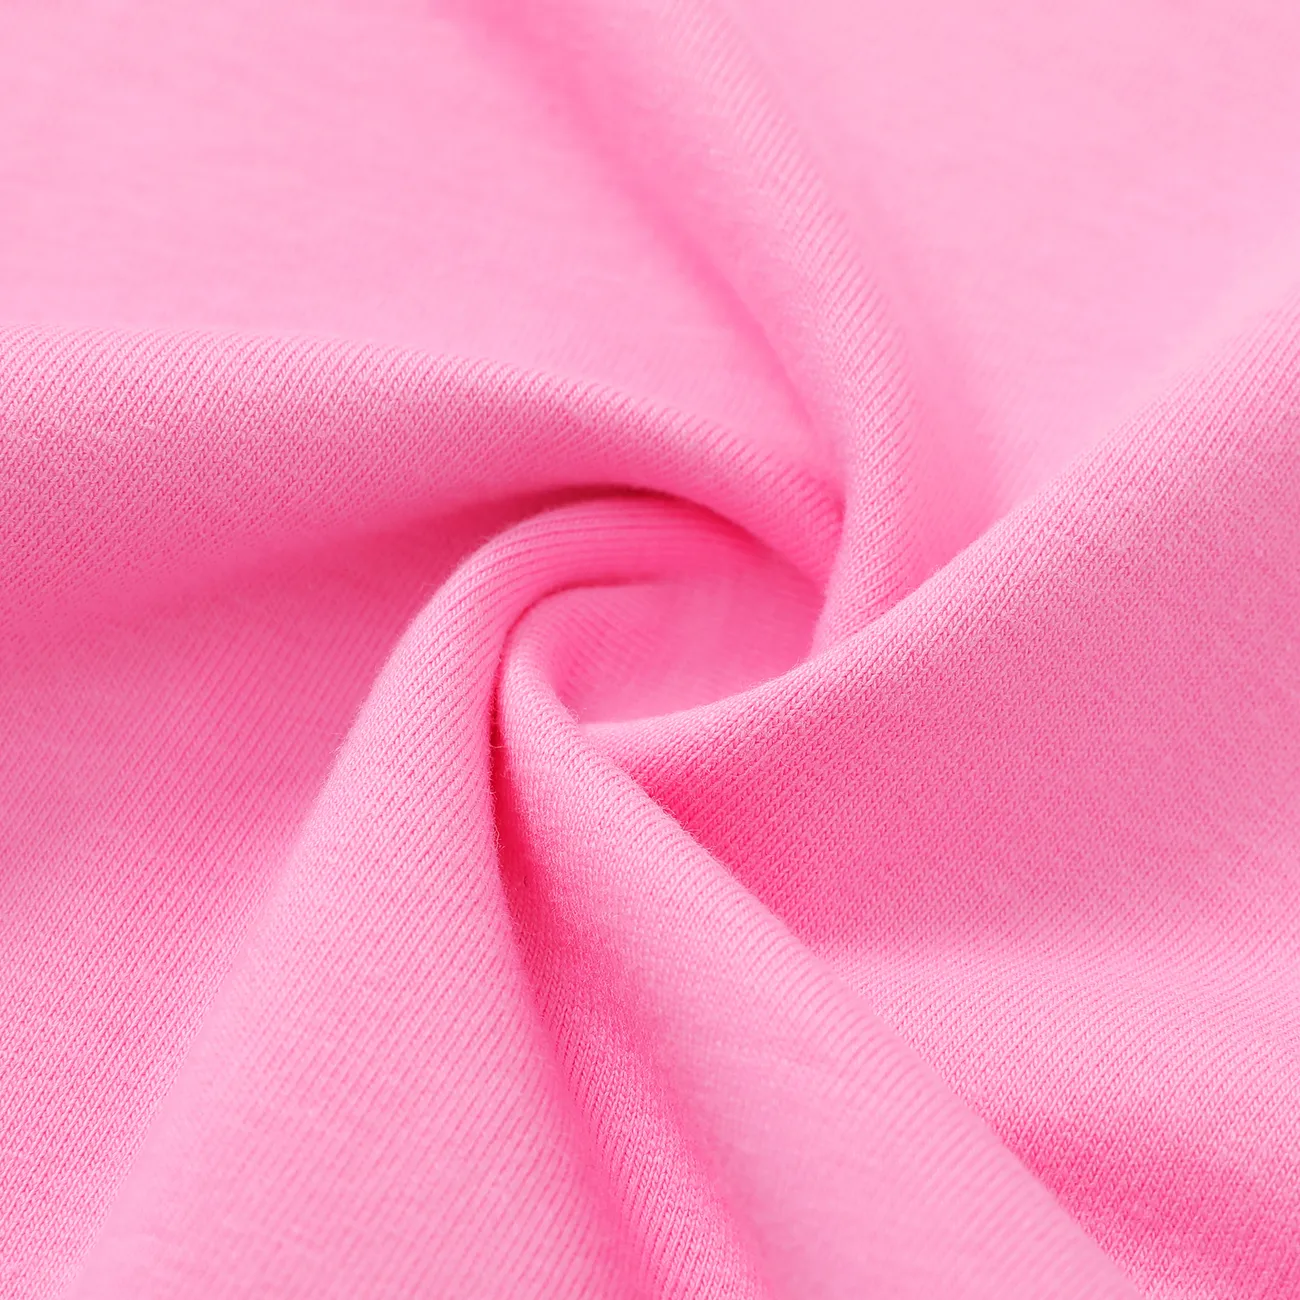 哈利波特 嬰兒 女 童趣 短袖 連身衣 粉色 big image 1